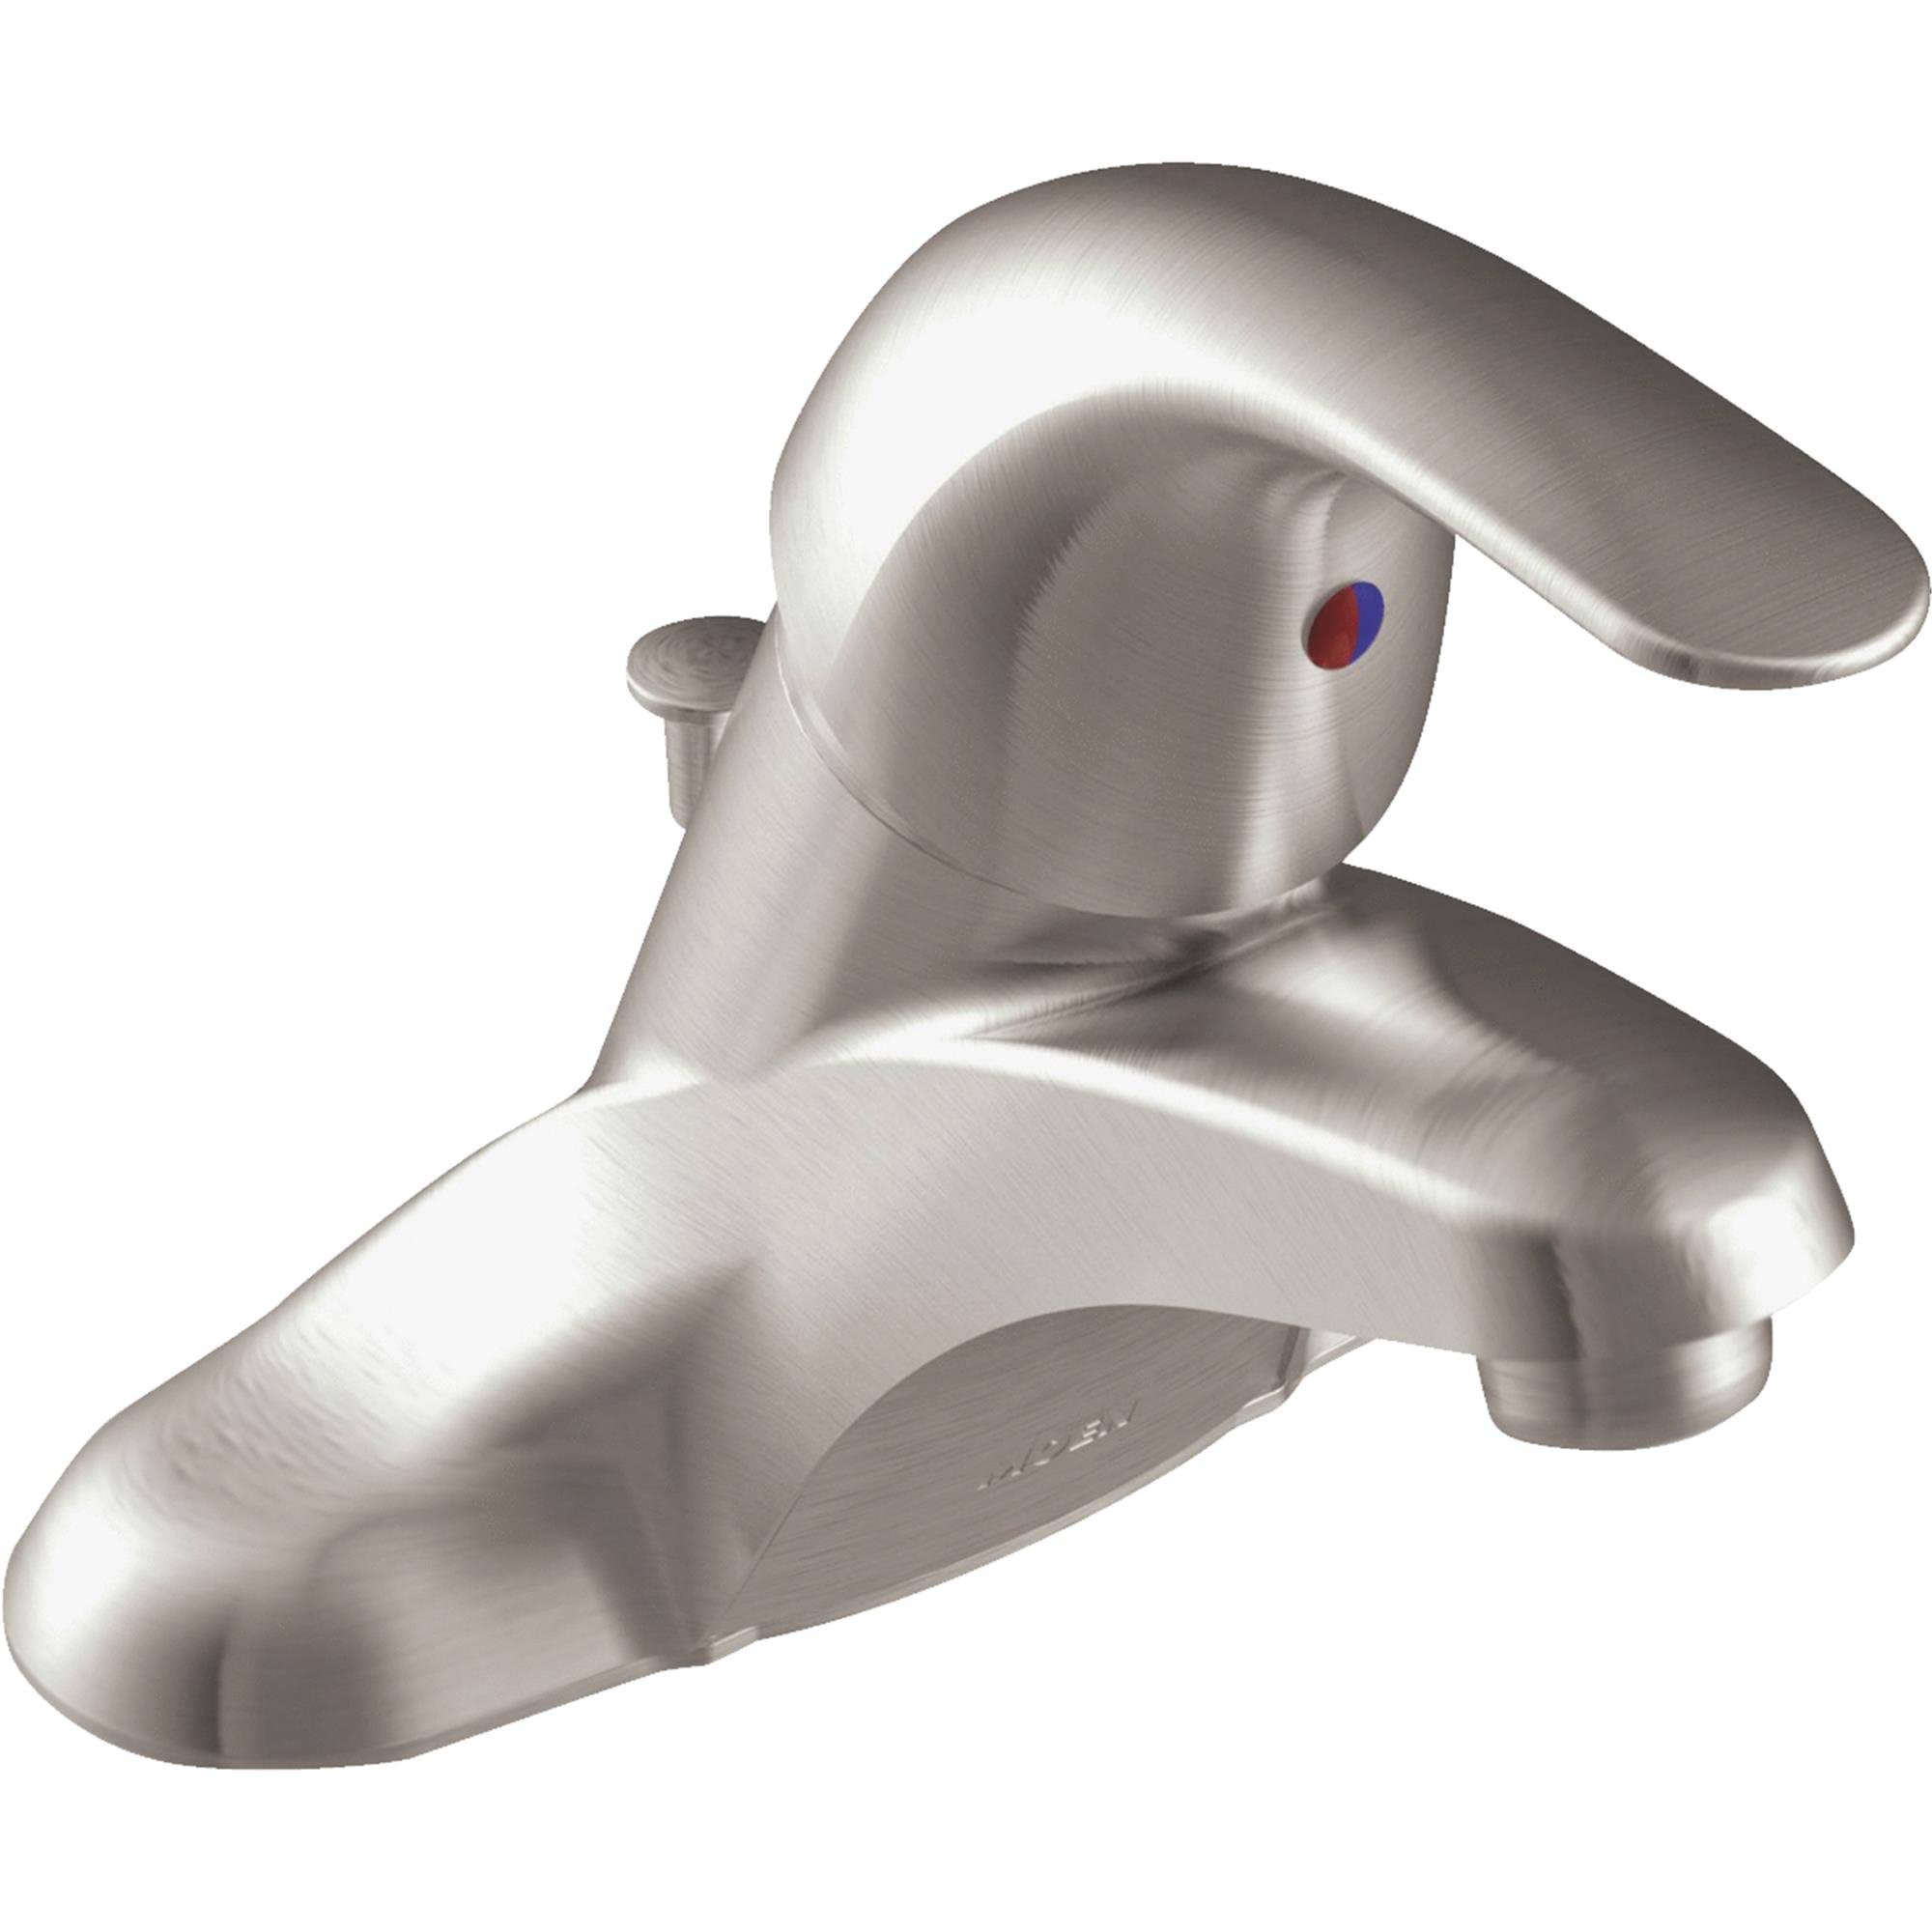 Moen Adler Spot Resist Single Handle Bathroom Faucet - Brushed Nickel, 4"